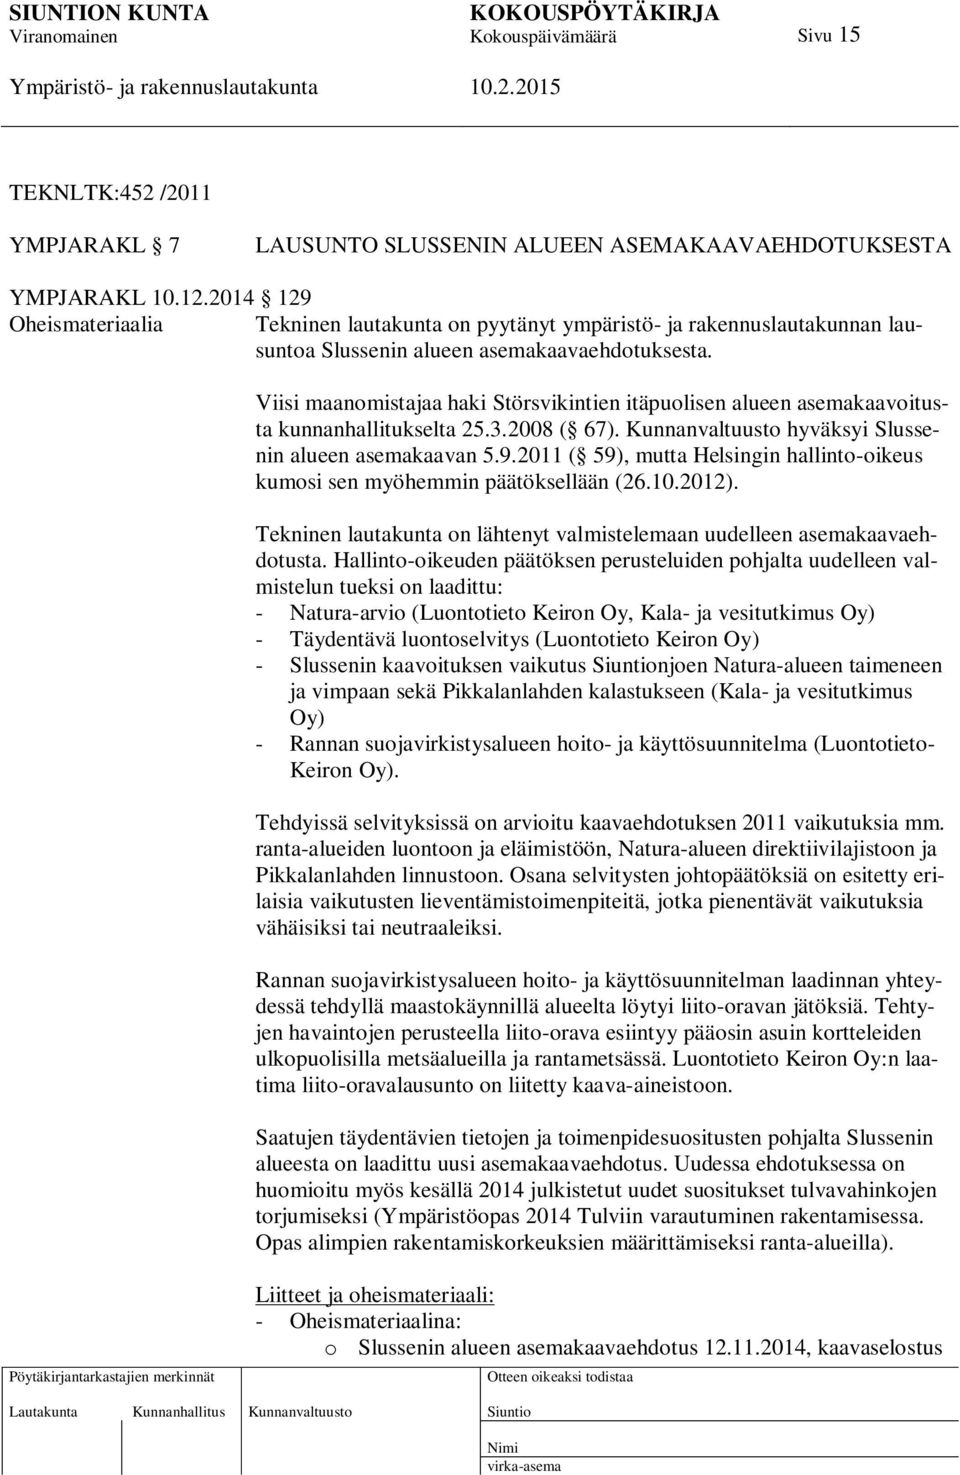 Viisi maanomistajaa haki Störsvikintien itäpuolisen alueen asemakaavoitusta kunnanhallitukselta 25.3.2008 ( 67). Kunnanvaltuusto hyväksyi Slussenin alueen asemakaavan 5.9.